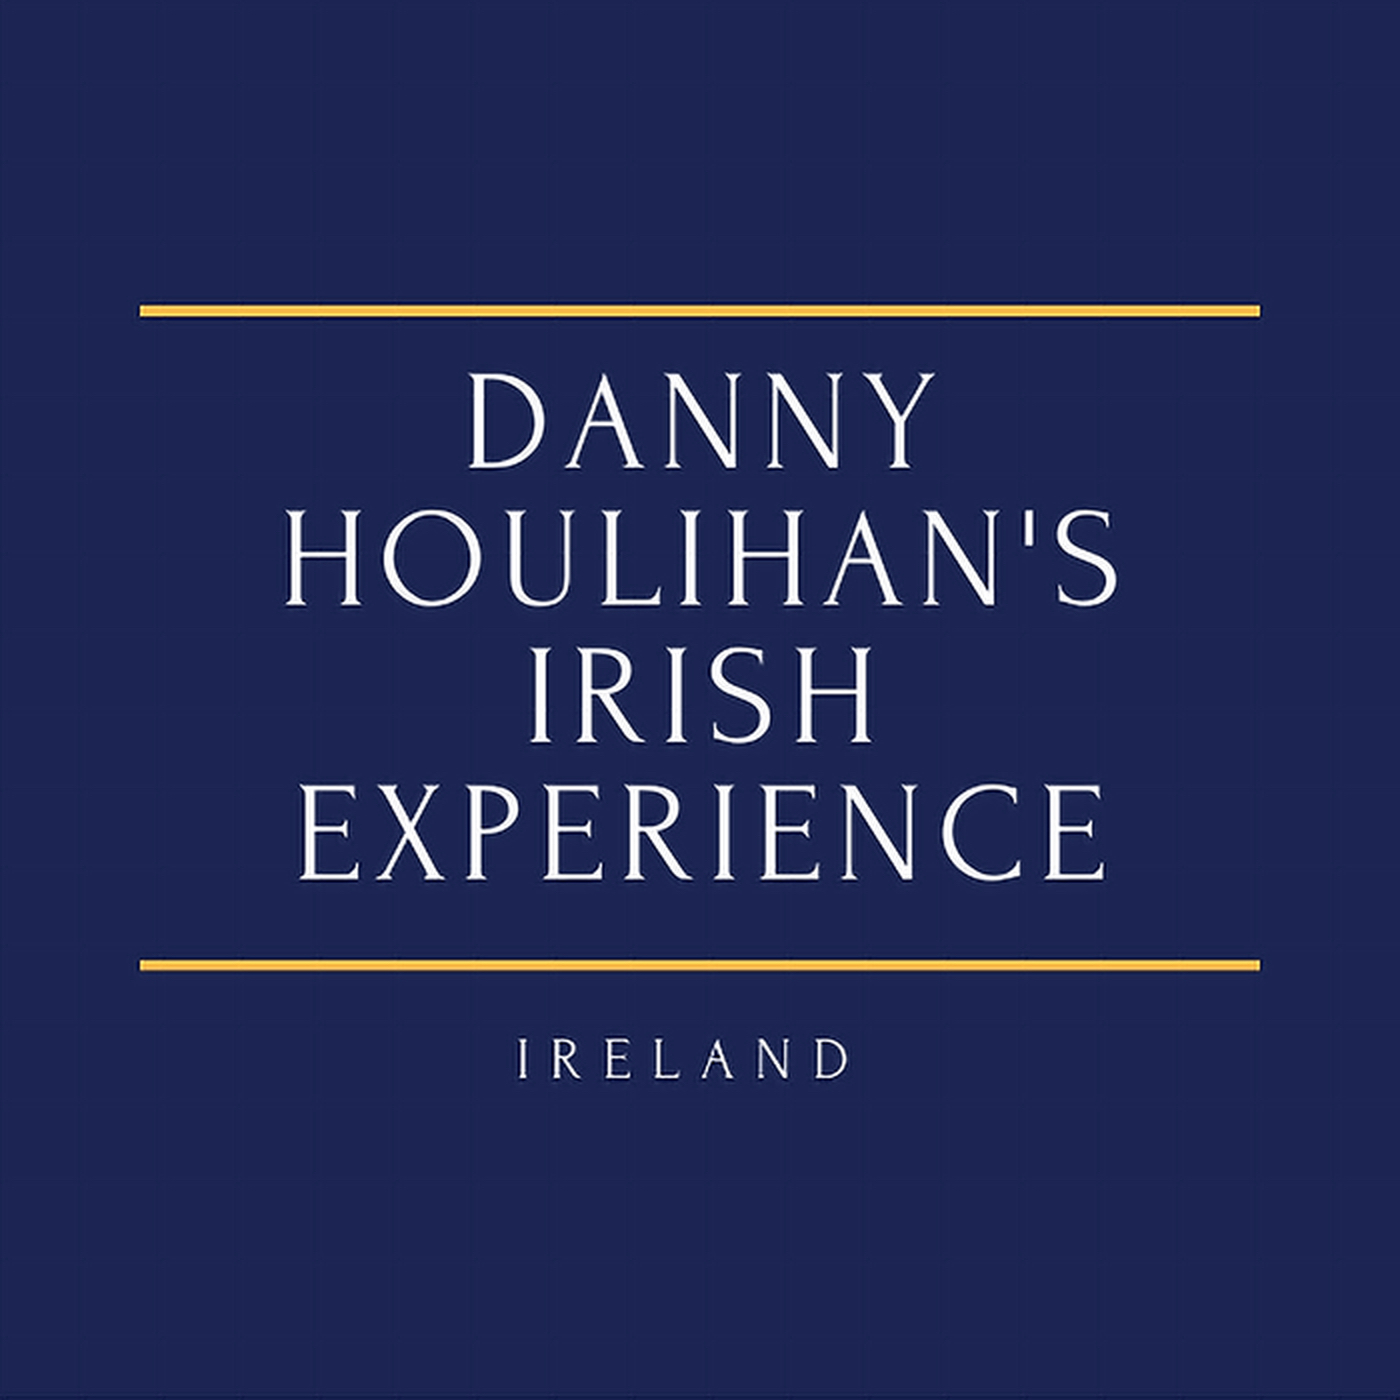 Danny Houlihan‘s Irish Experience